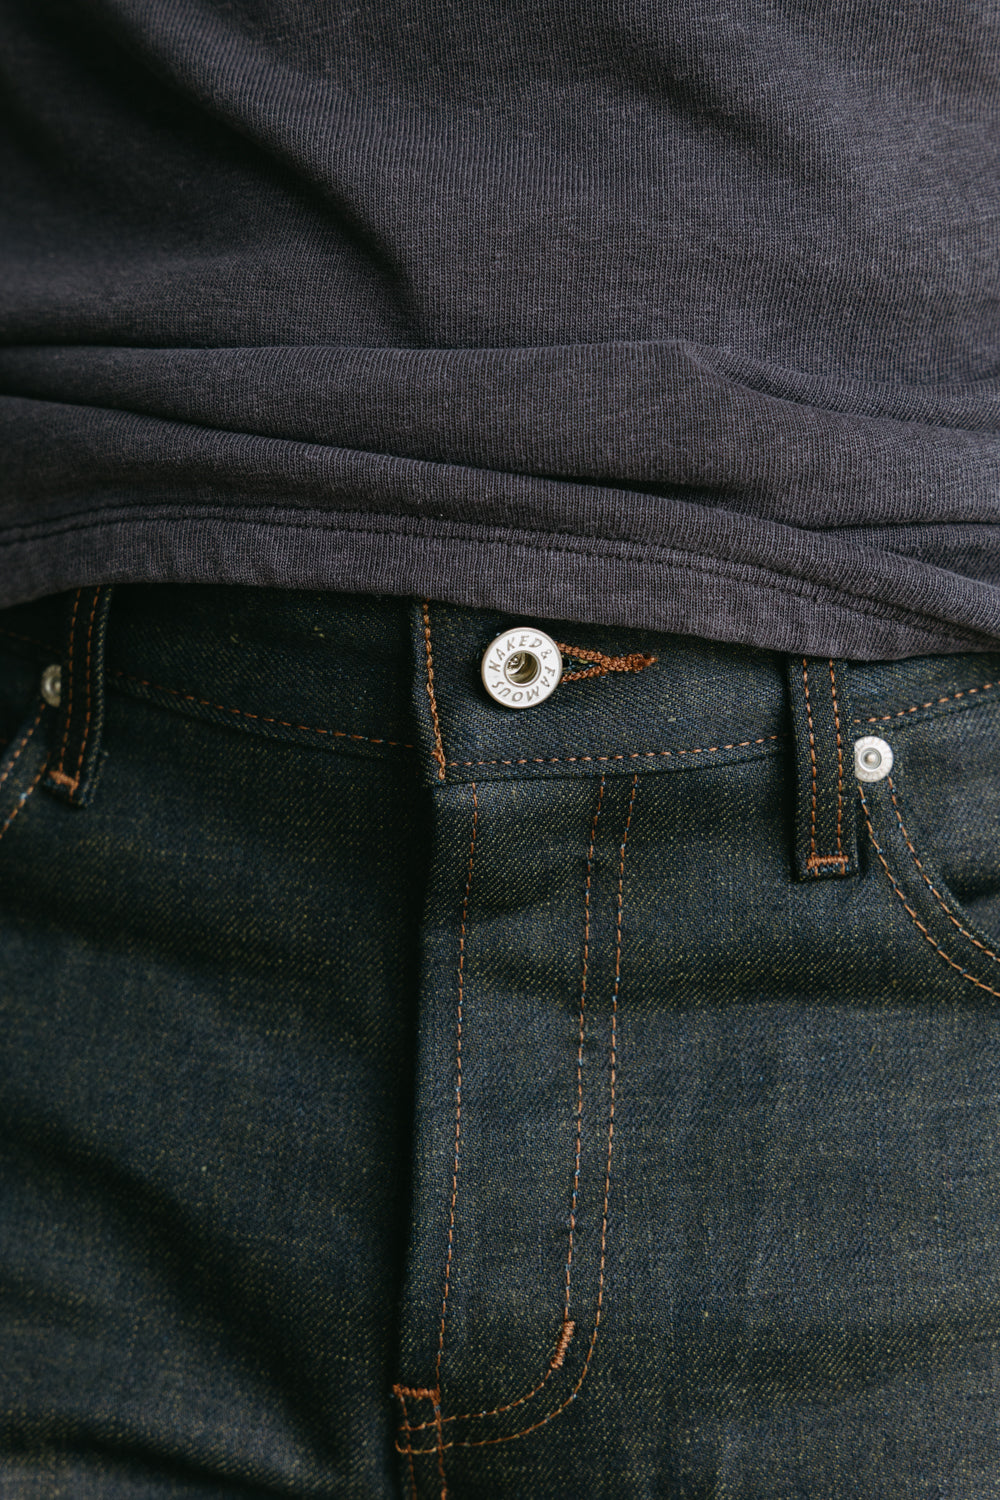 Mens Jeans - Buy Jeans for Men Online at Best Prices | Westside